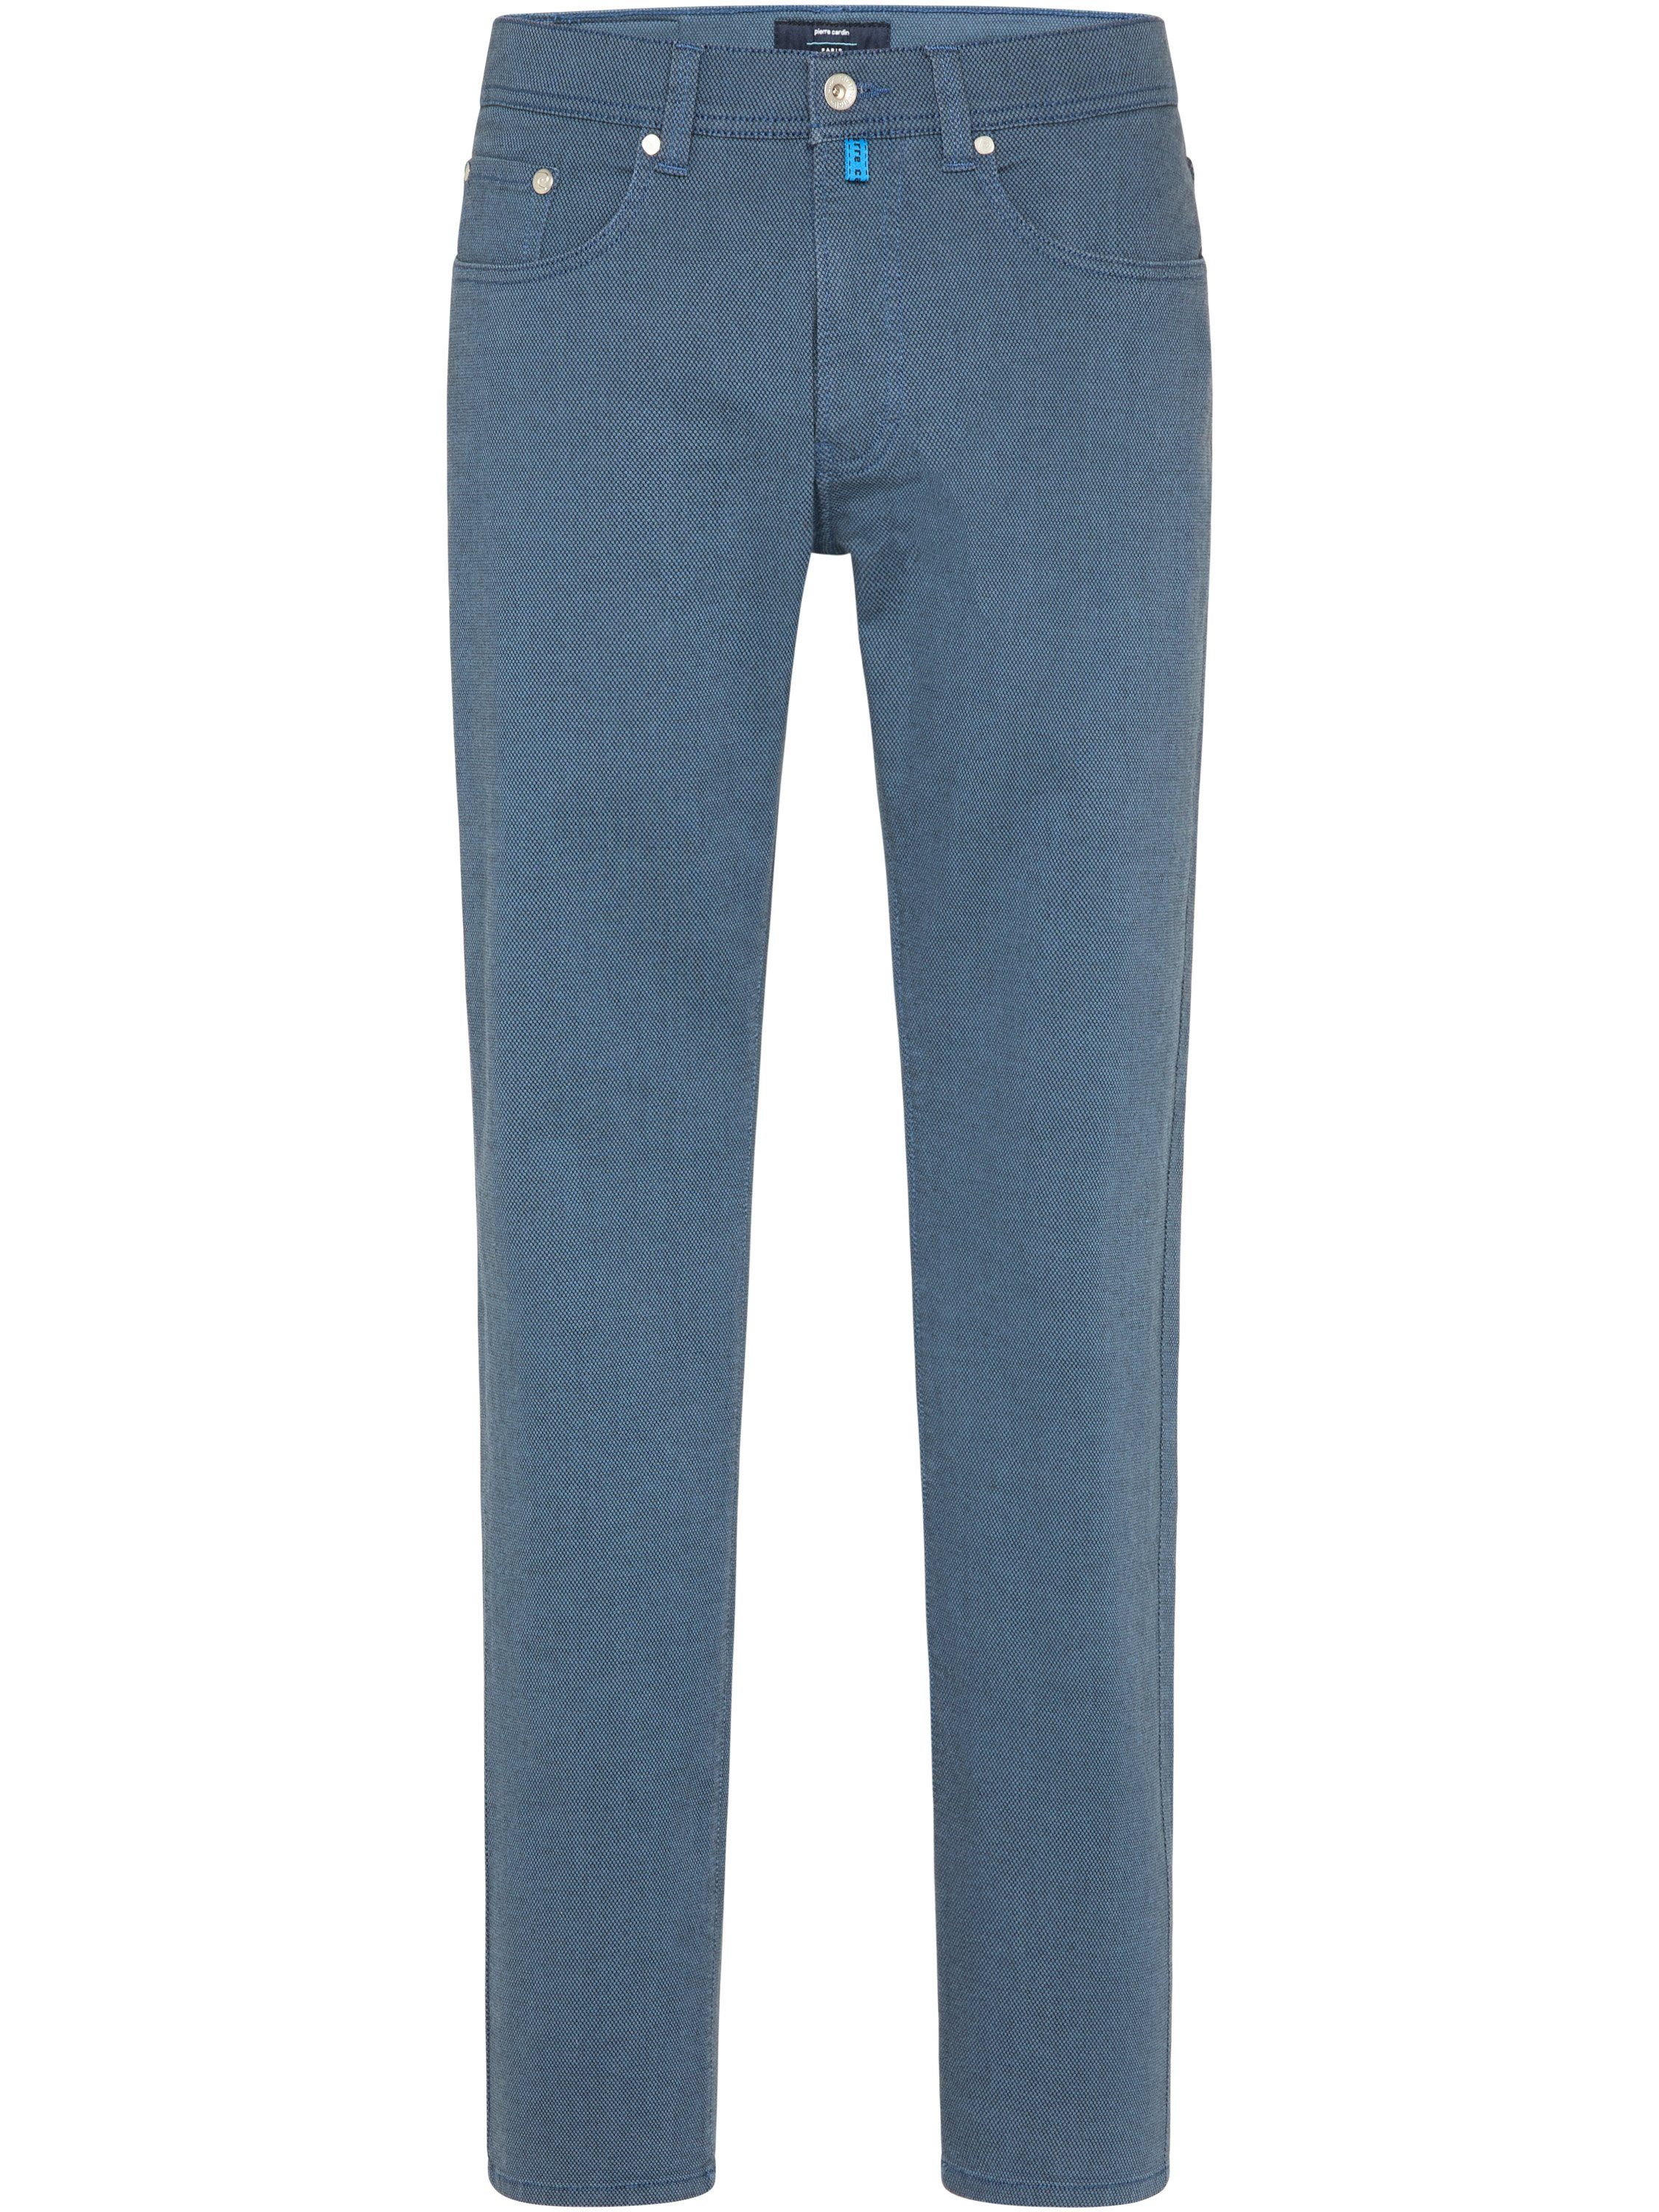 Pierre Cardin 5-Pocket-Jeans PIERRE CARDIN FUTUREFLEX LYON dusty blue structured 3454 4100.65